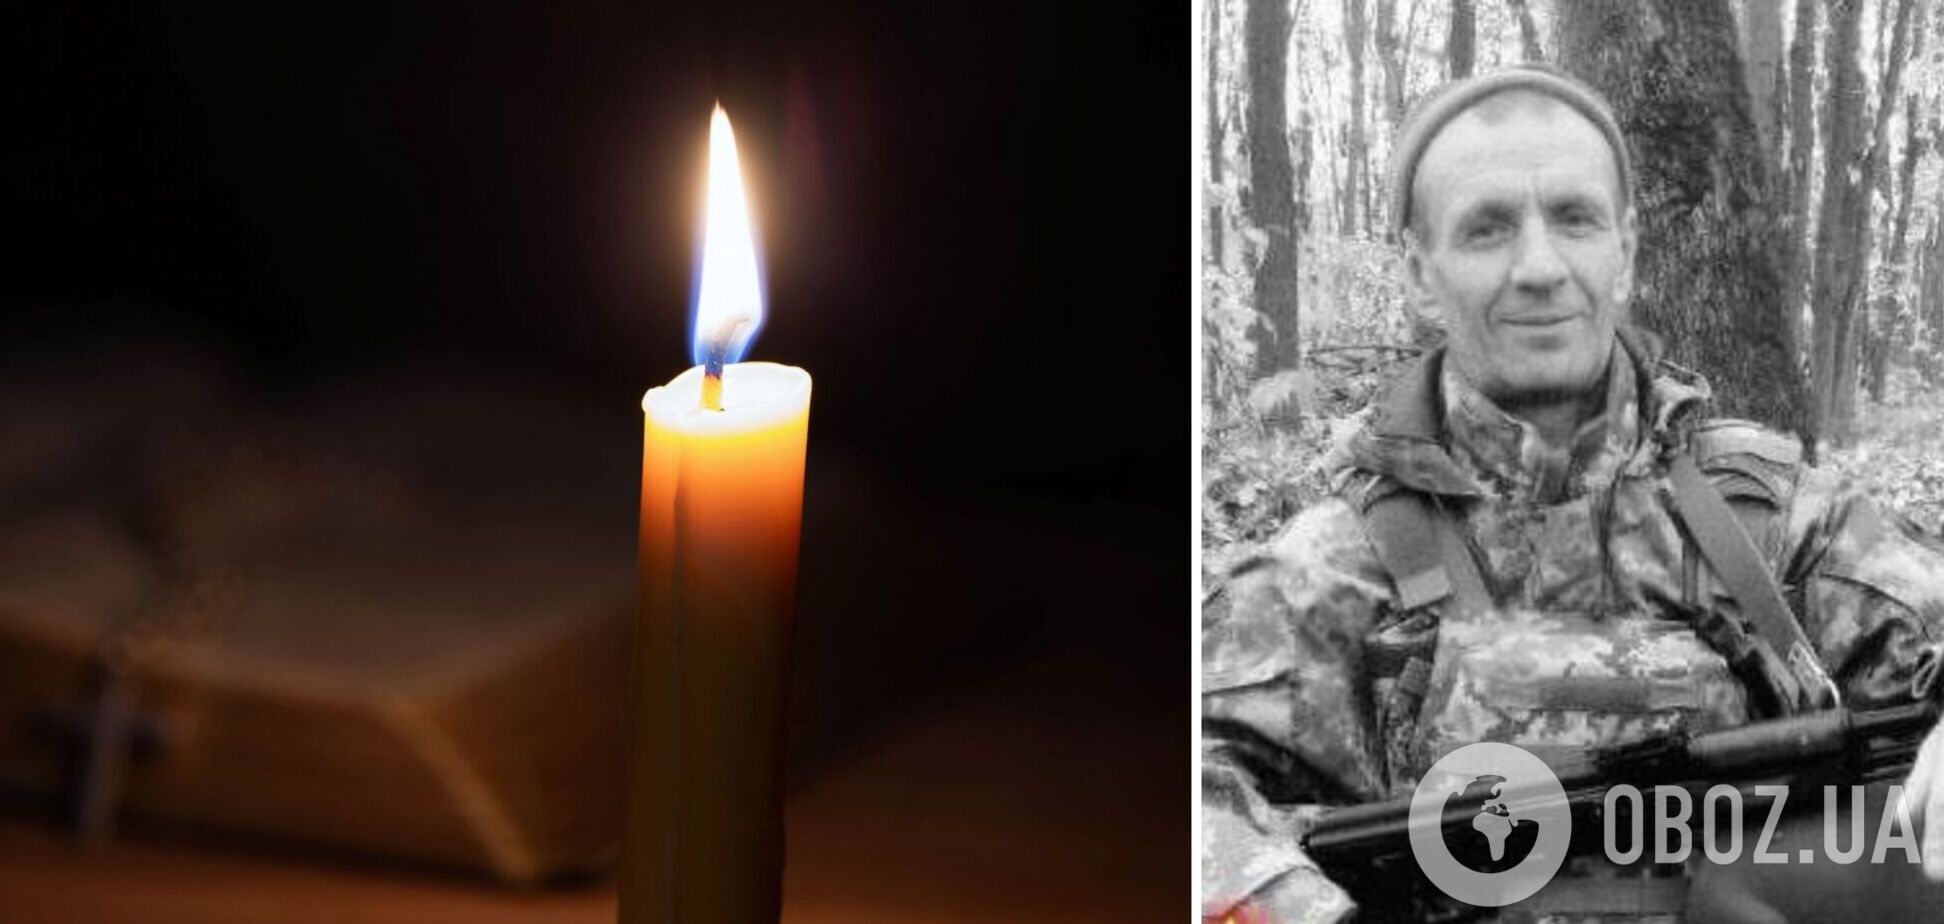 Жизнь защитника Украины оборвалась 15 февраля